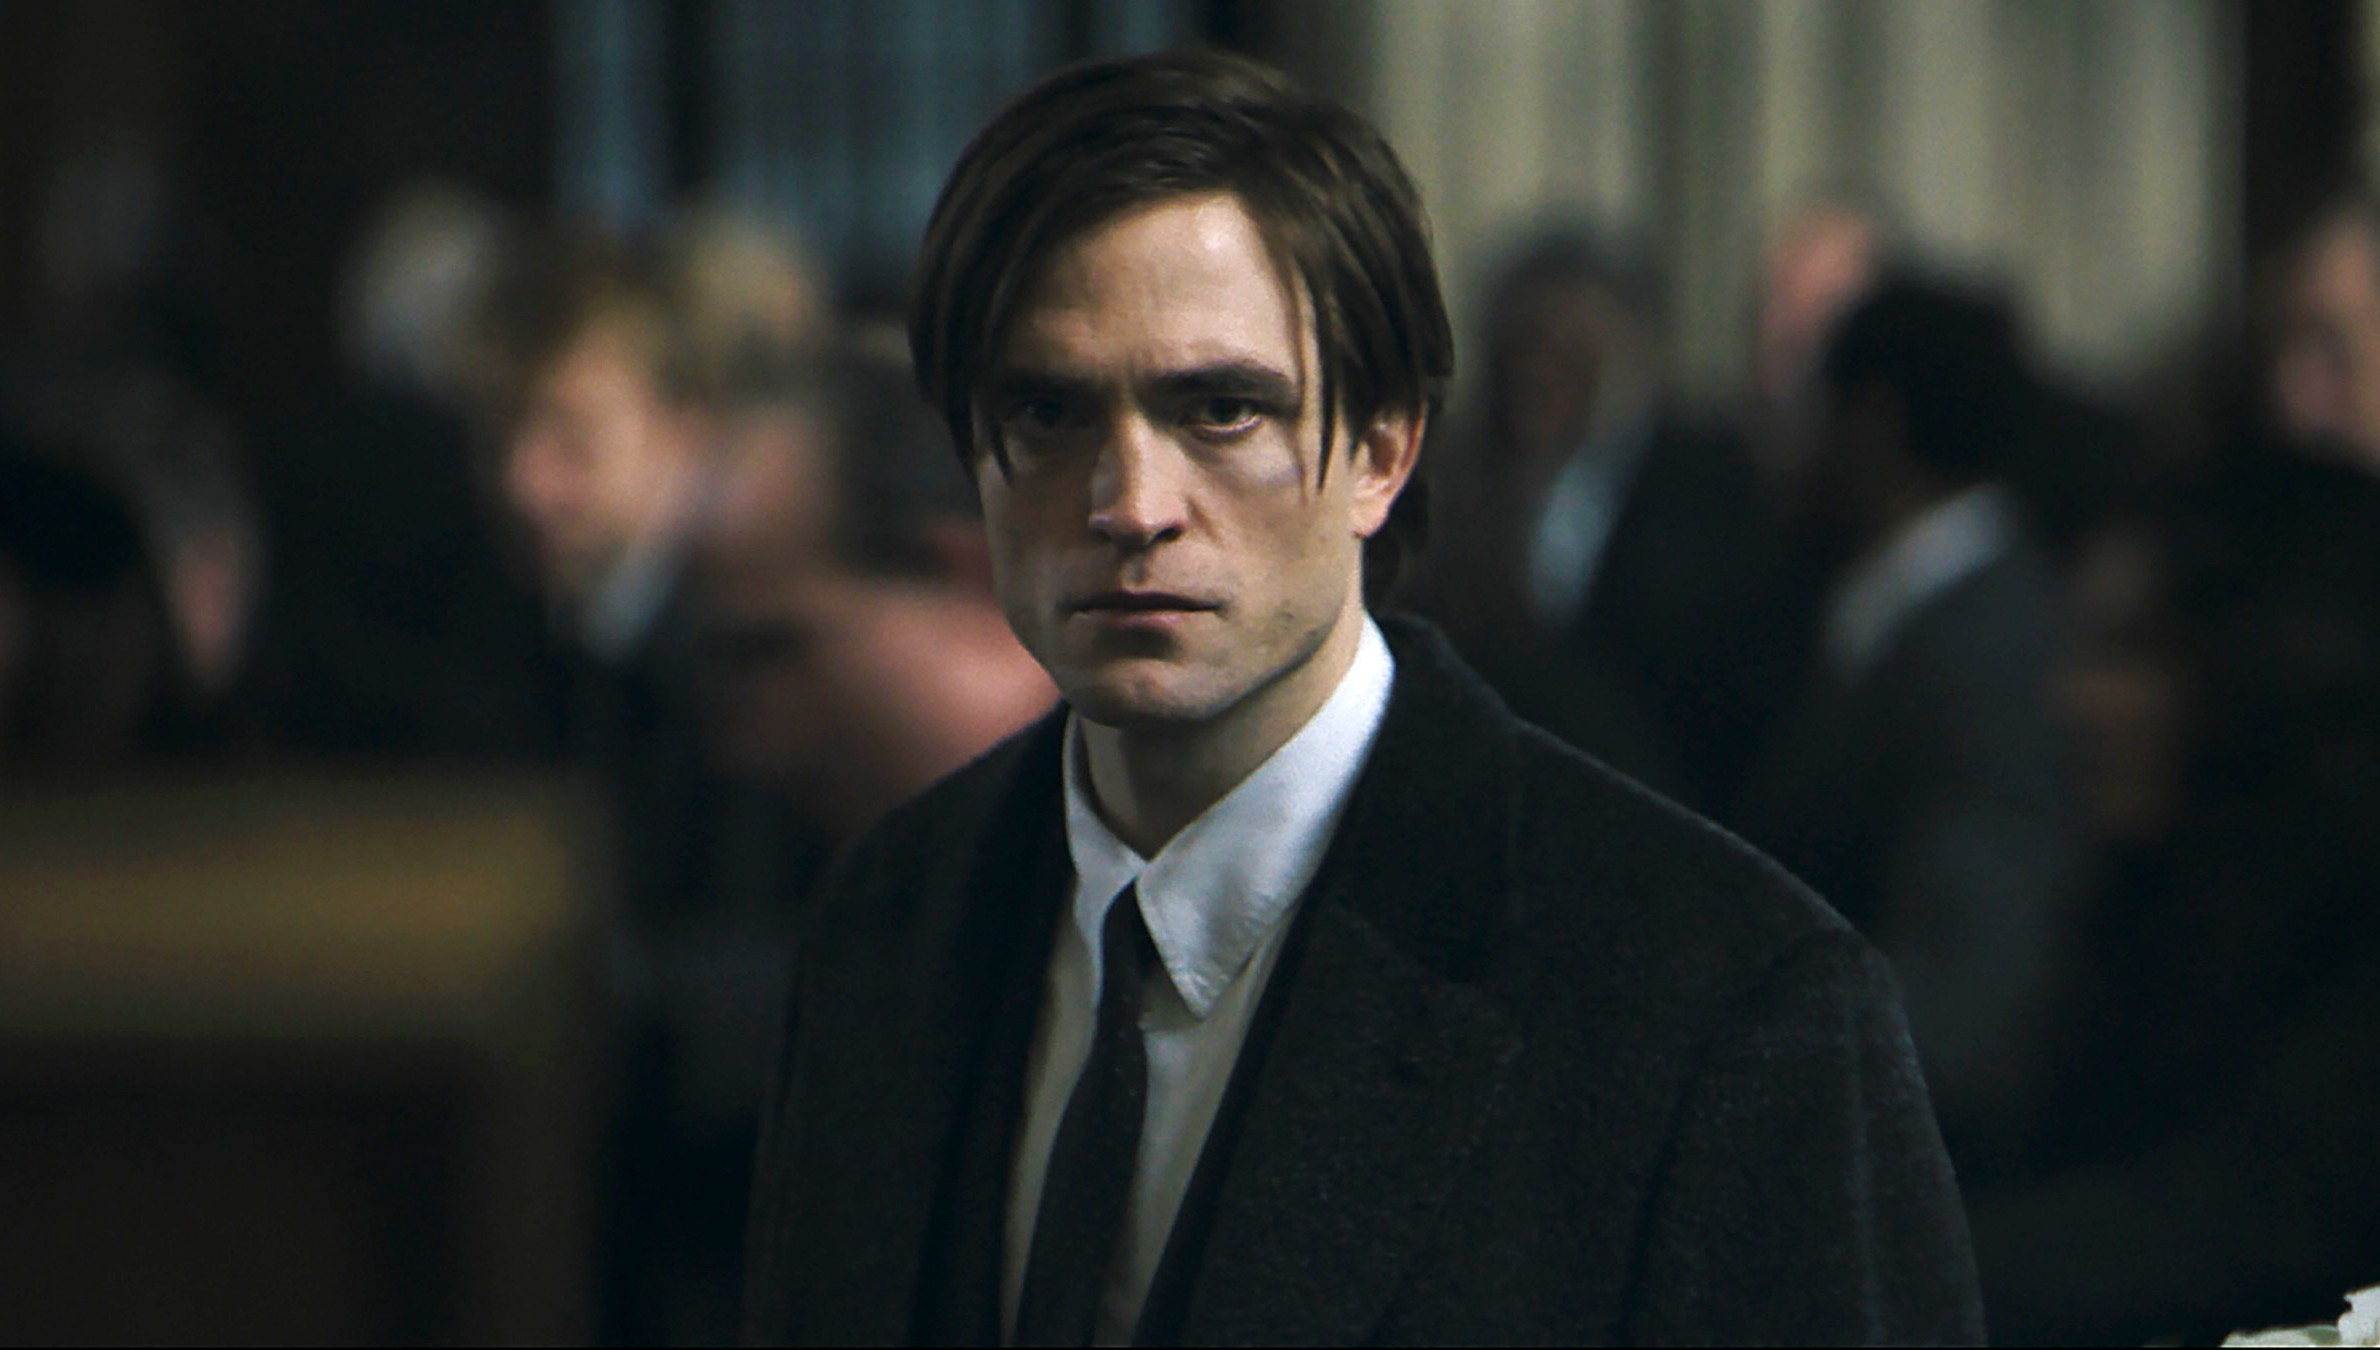 Best Robert Pattinson Movies to Watch After The Batman | Den of Geek